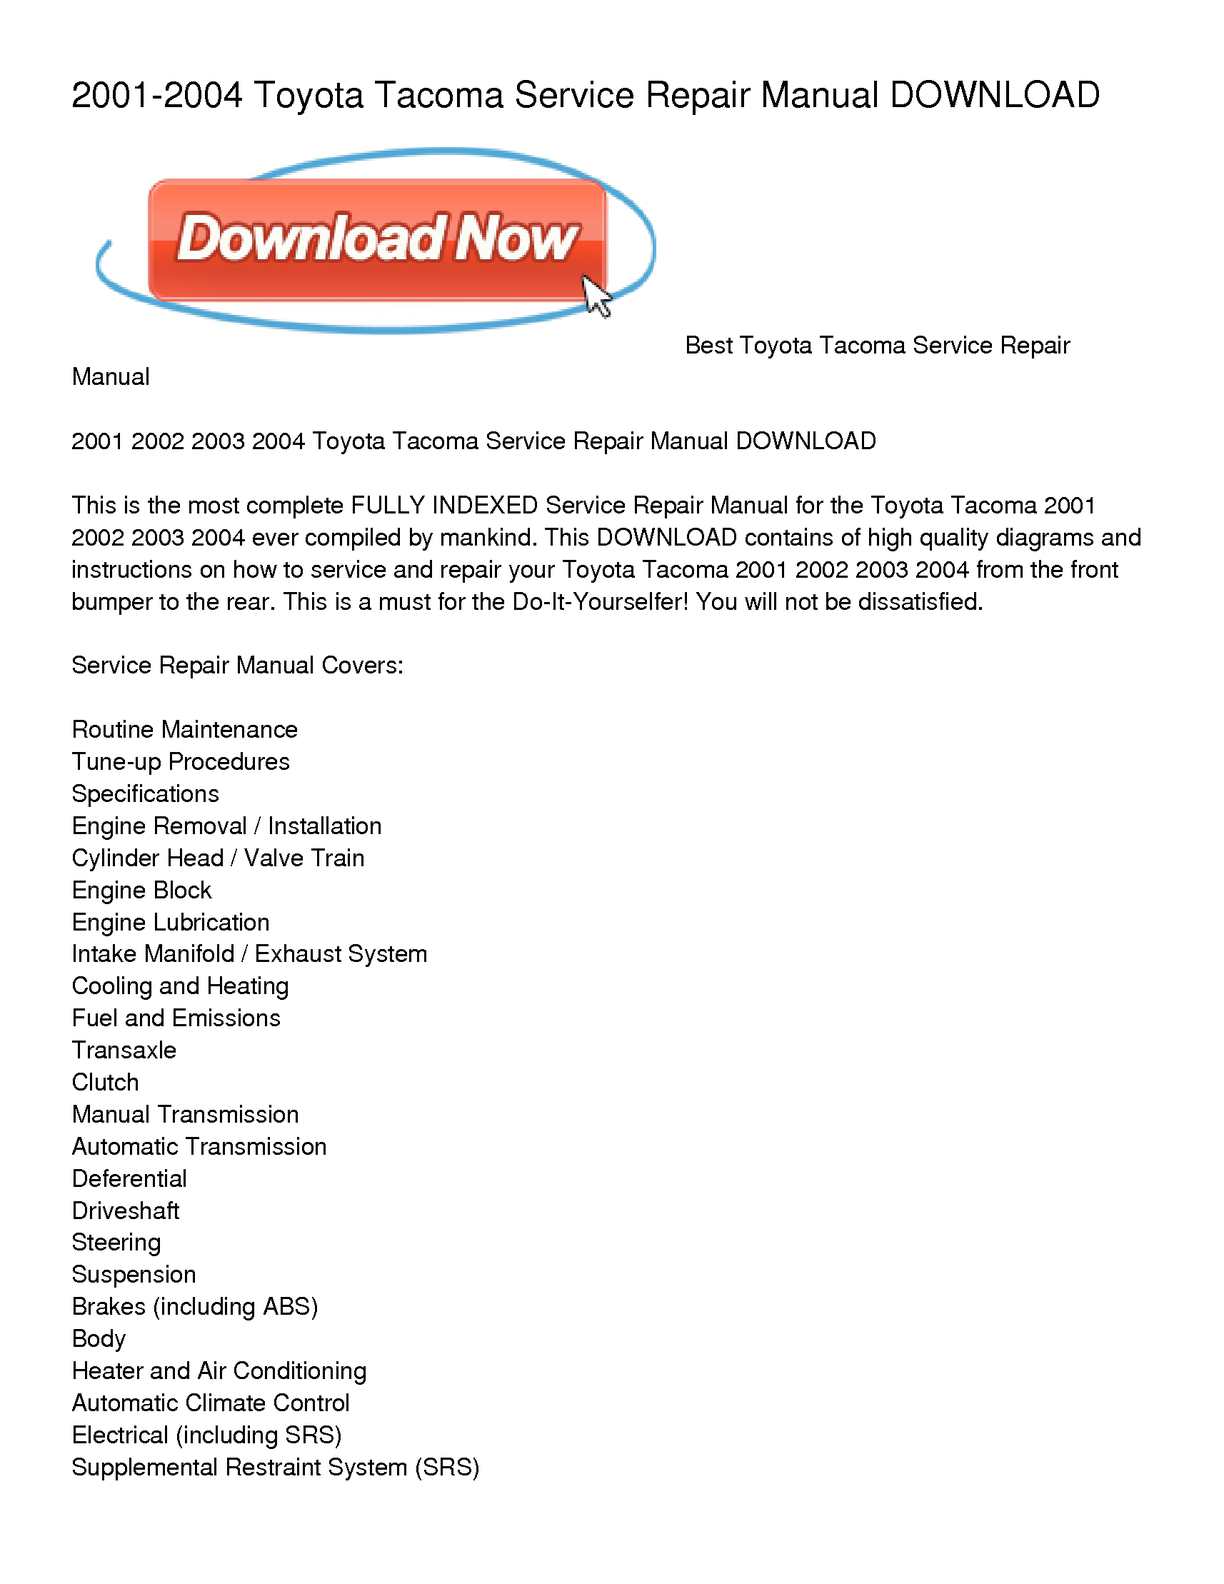 Toyota tacoma owners manual pdf